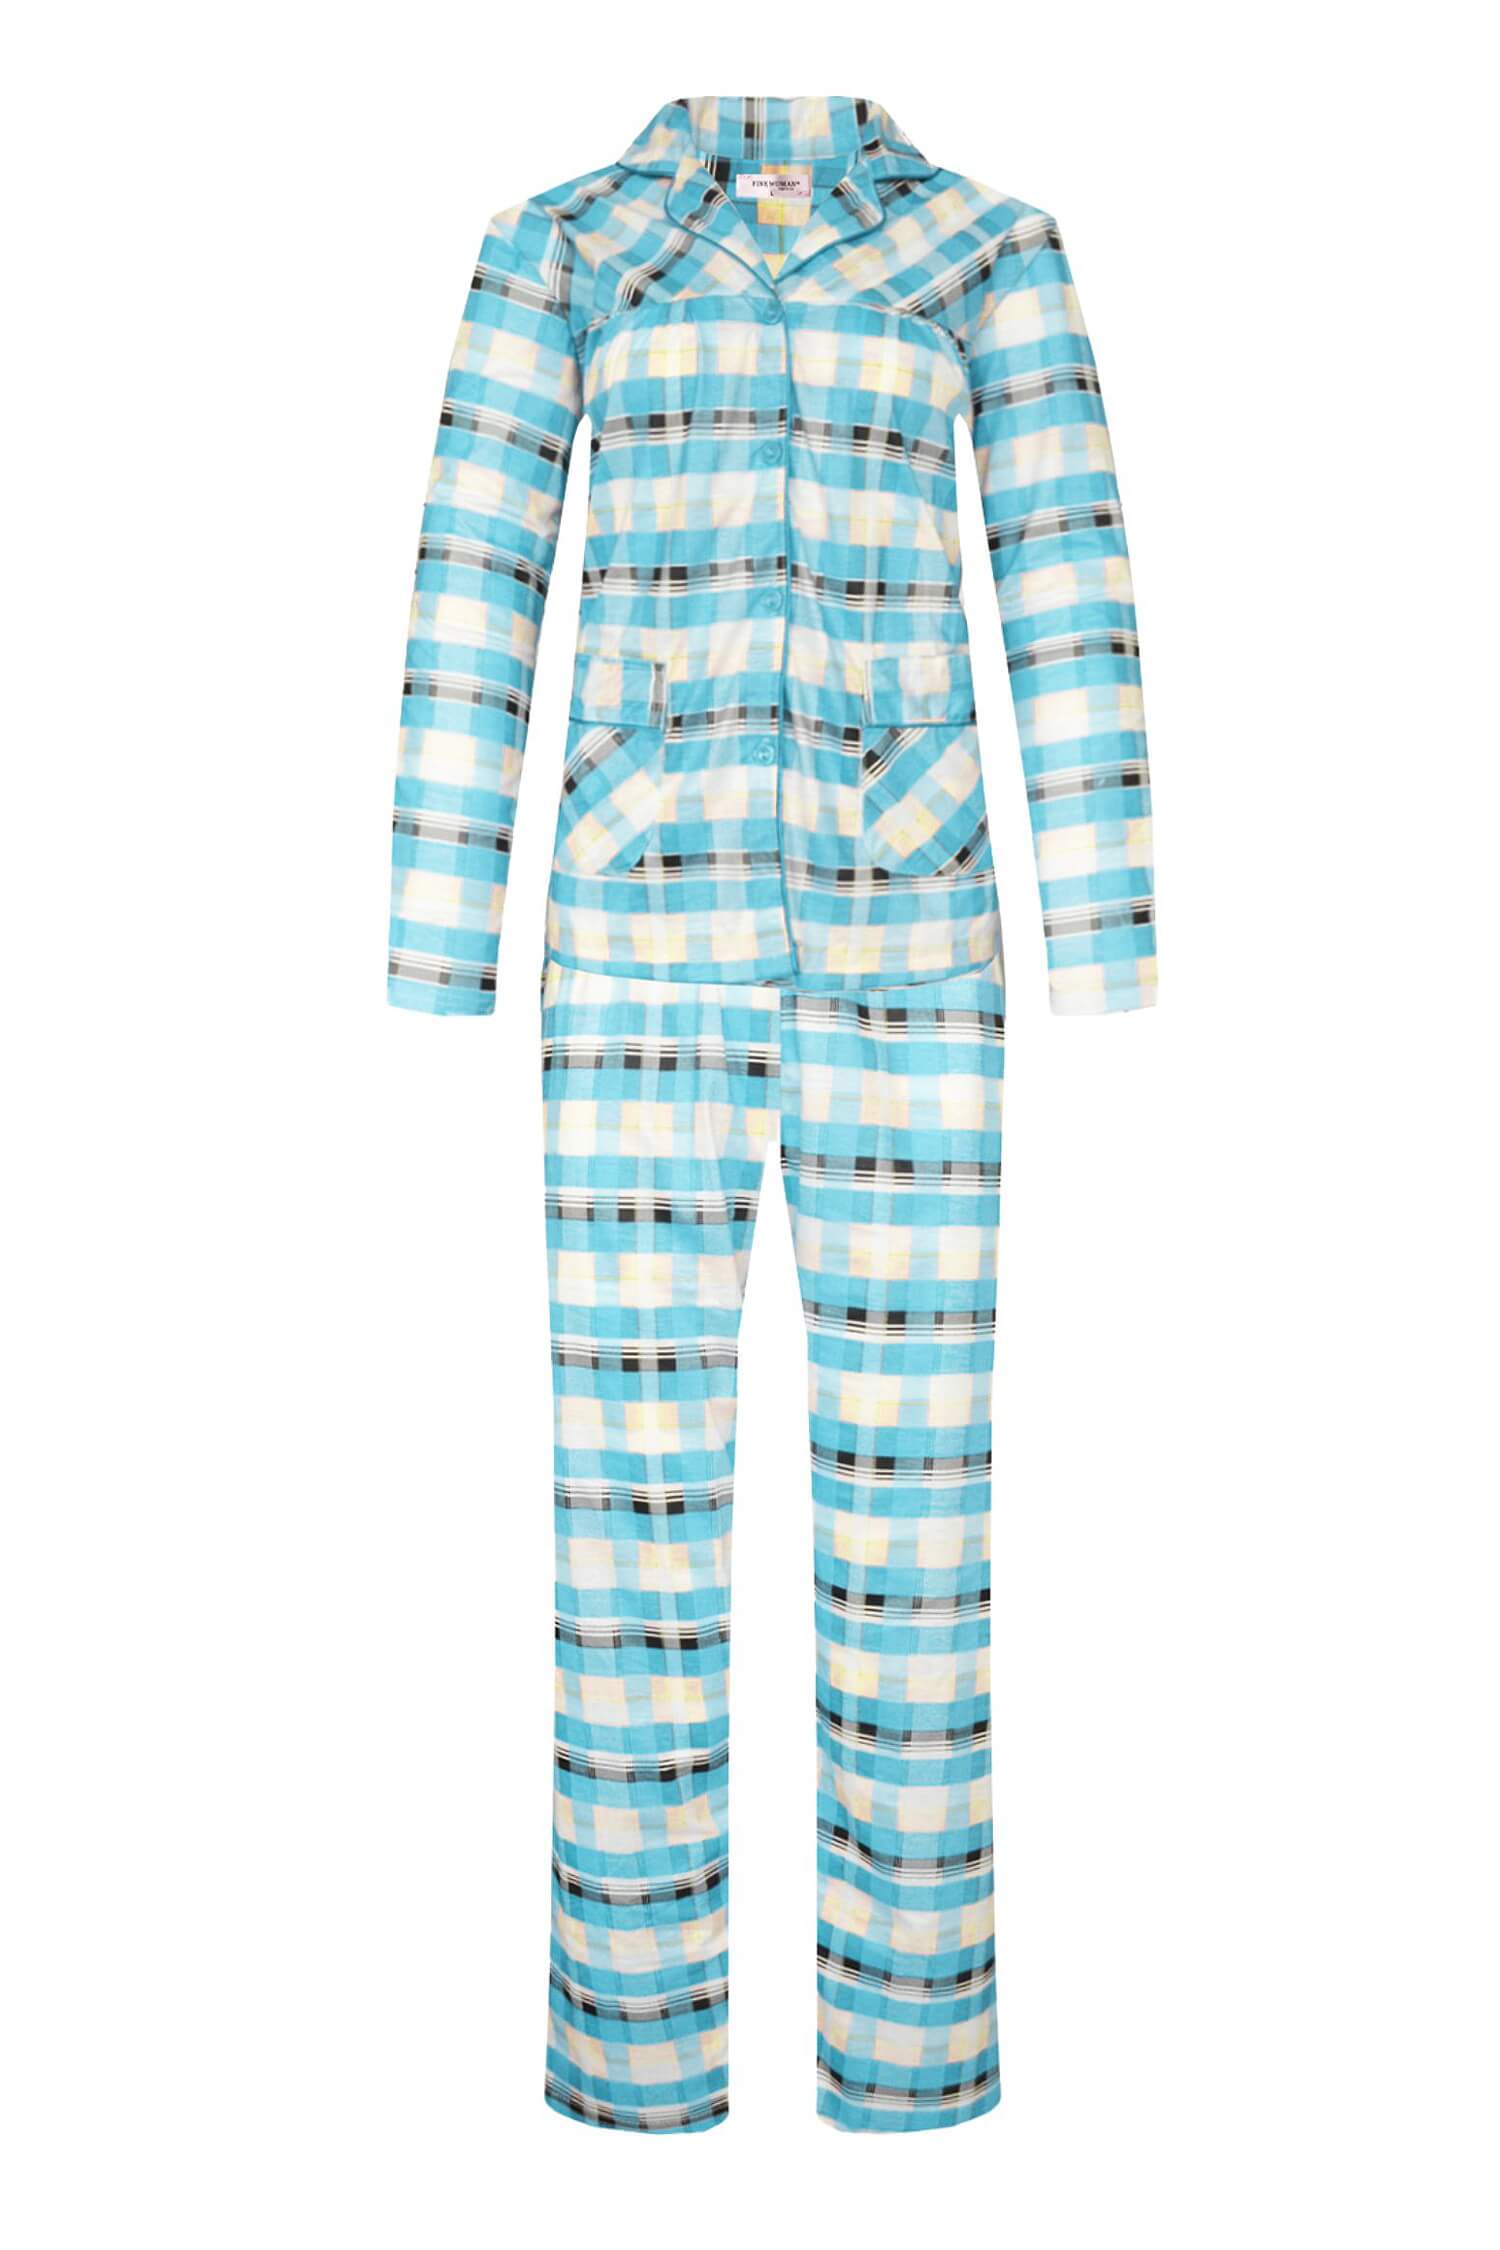 Odeta dámské kostkované pyžamo dlouhé 2271 3XL světle modrá